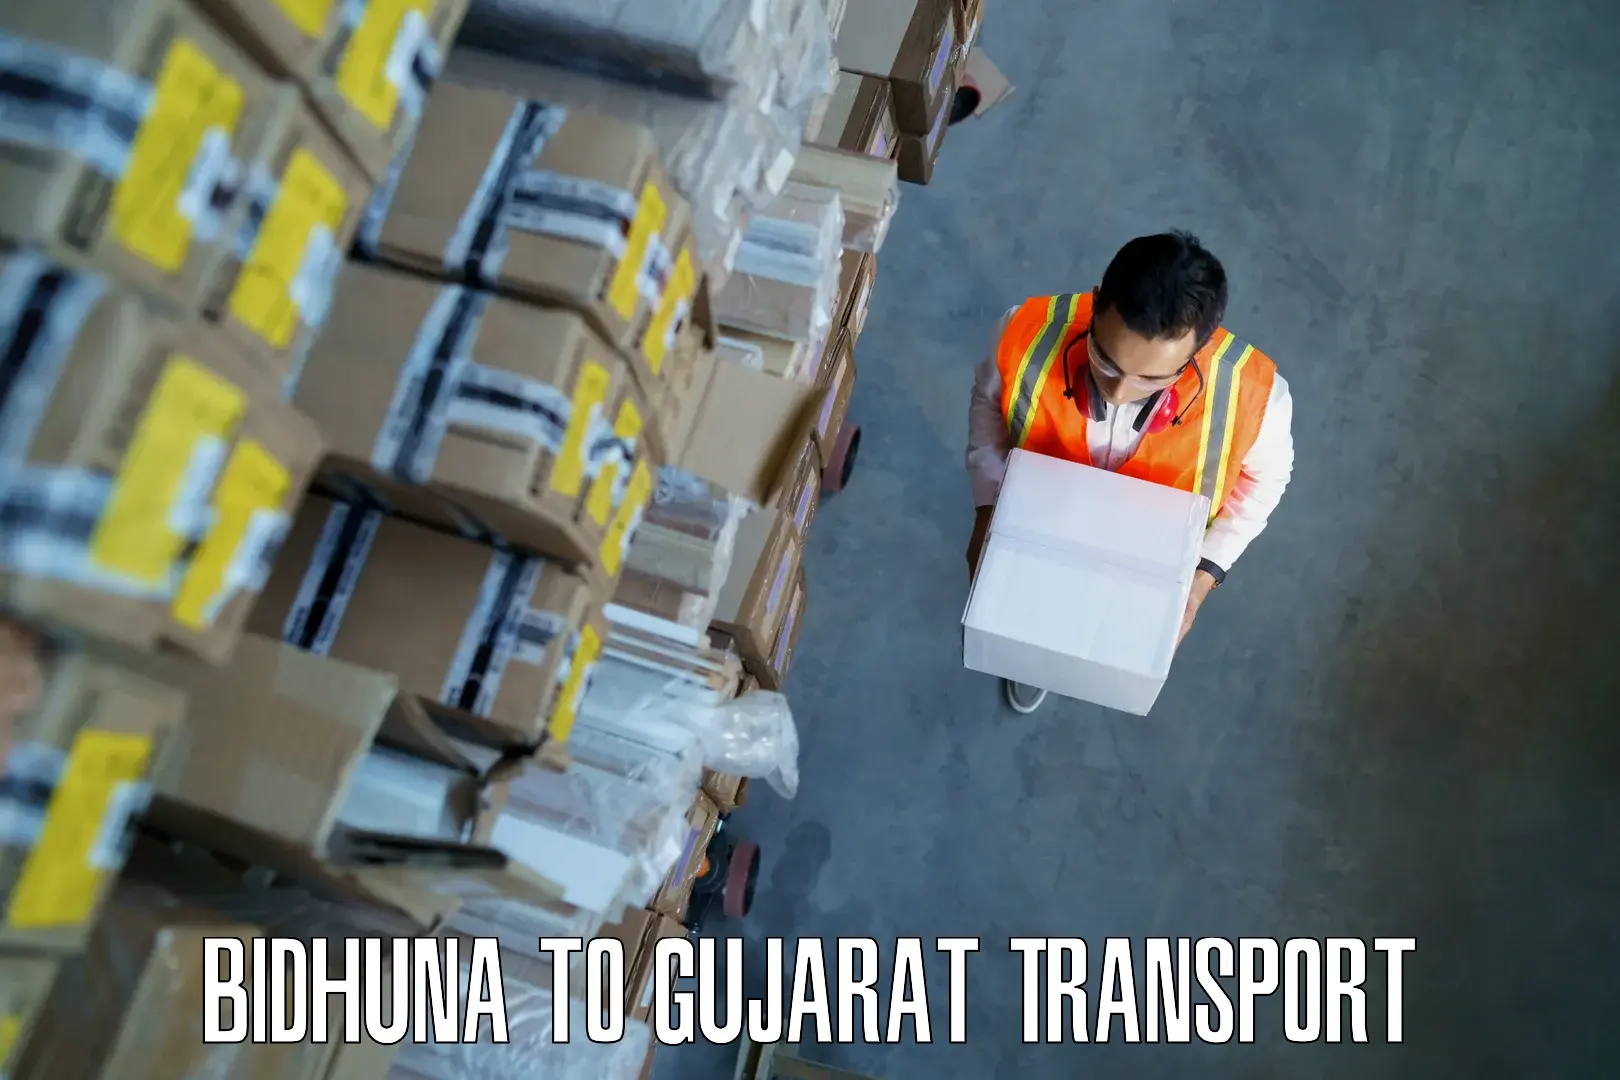 Commercial transport service Bidhuna to IIIT Surat